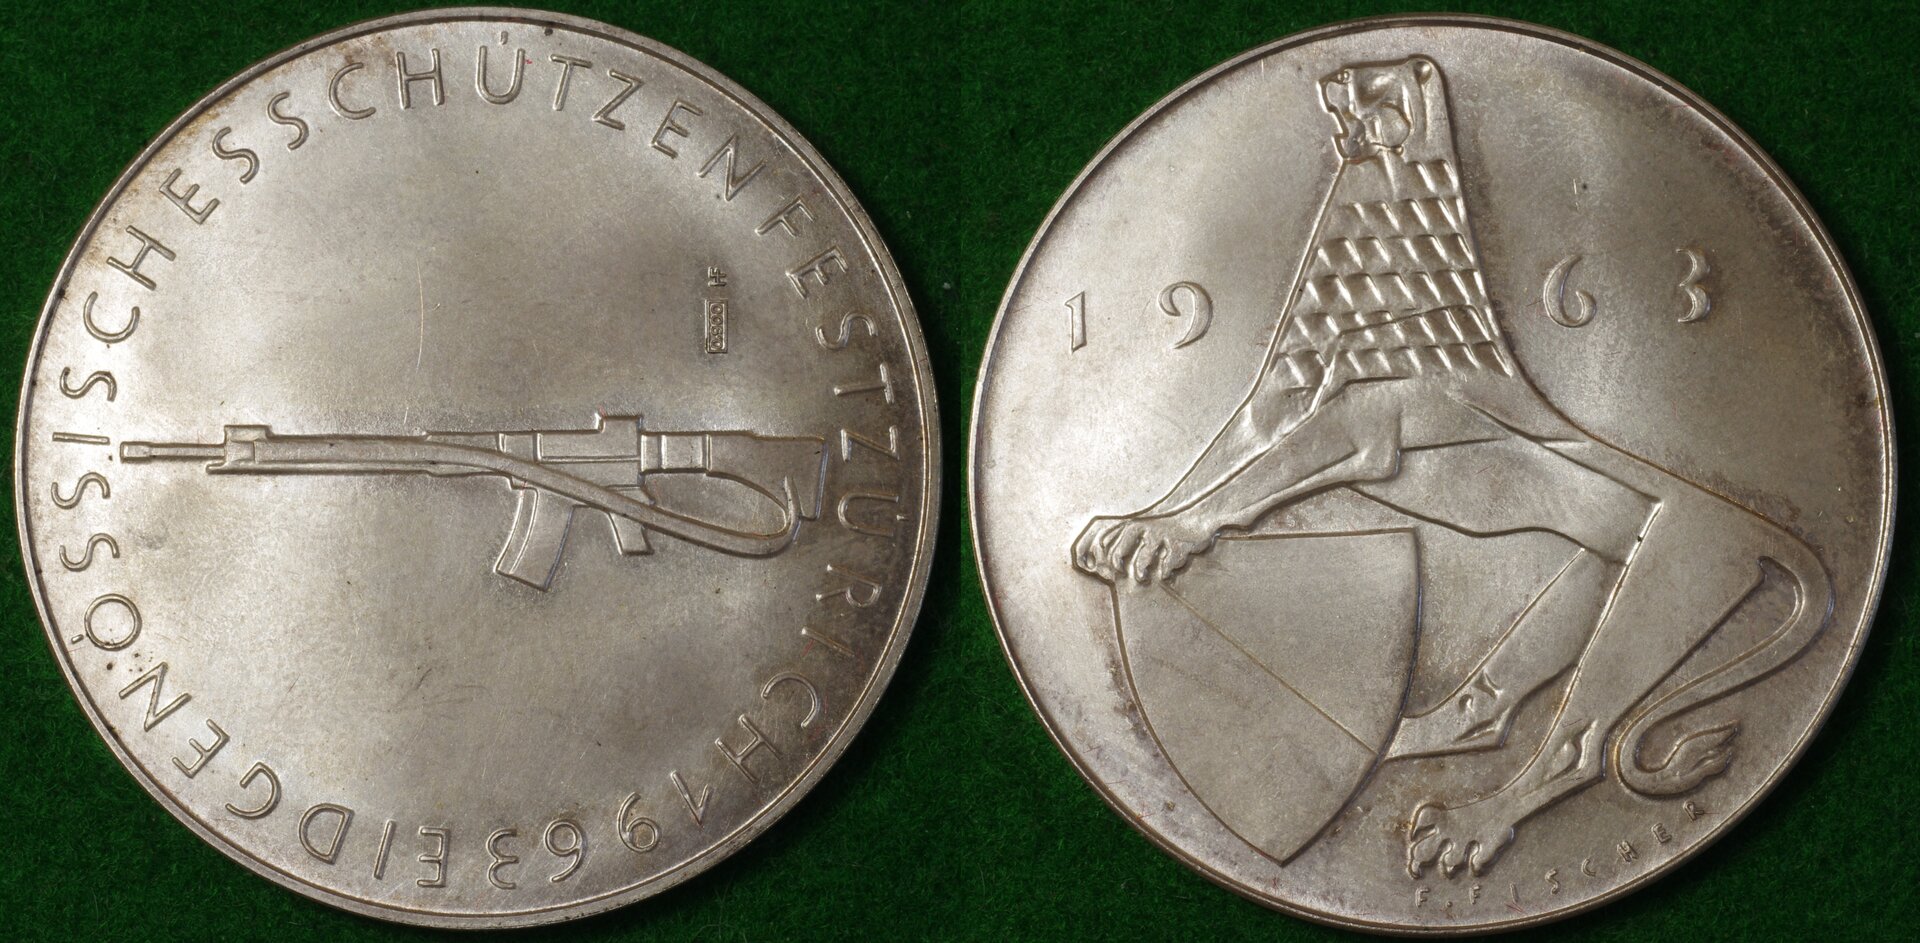 Switz shooting medal 1963 1-horz.jpg